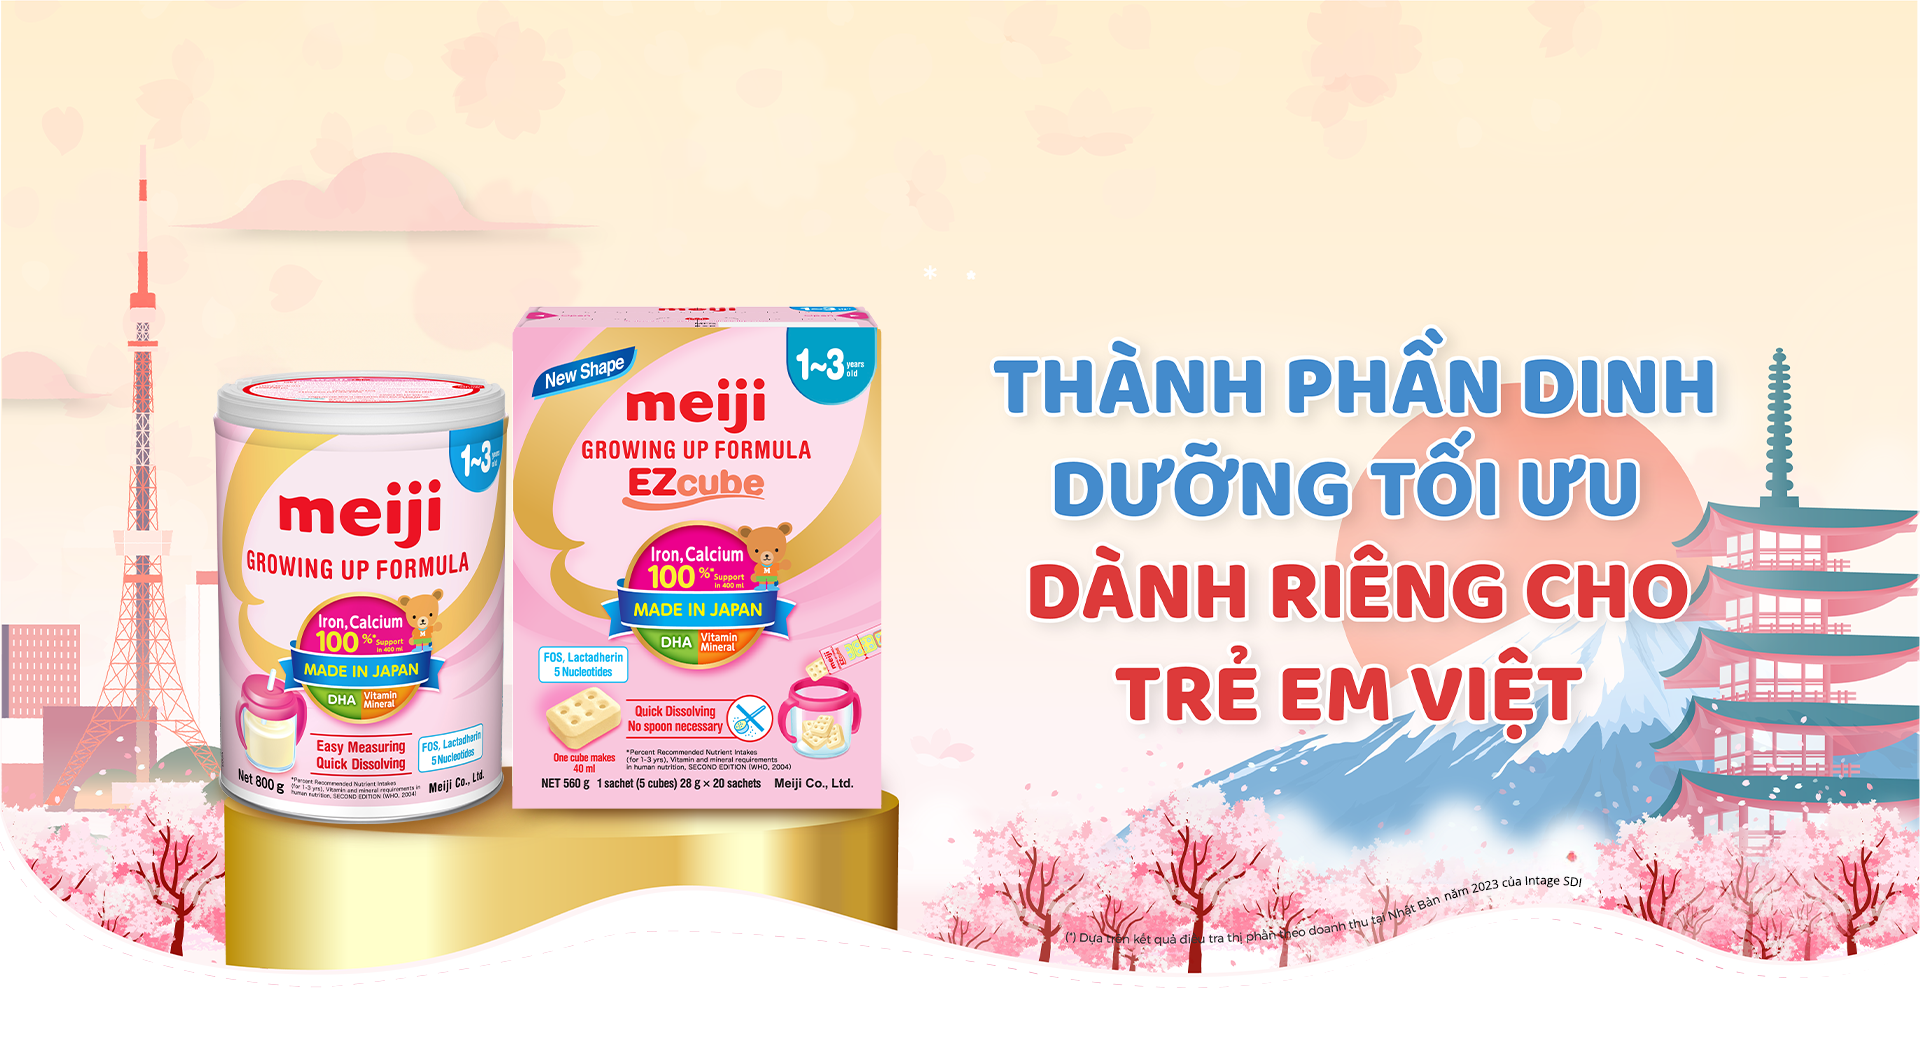 Sữa Meiji nhập khẩu phân phối độc quyền bởi tập đoàn Sóng Thần tại Việt Nam